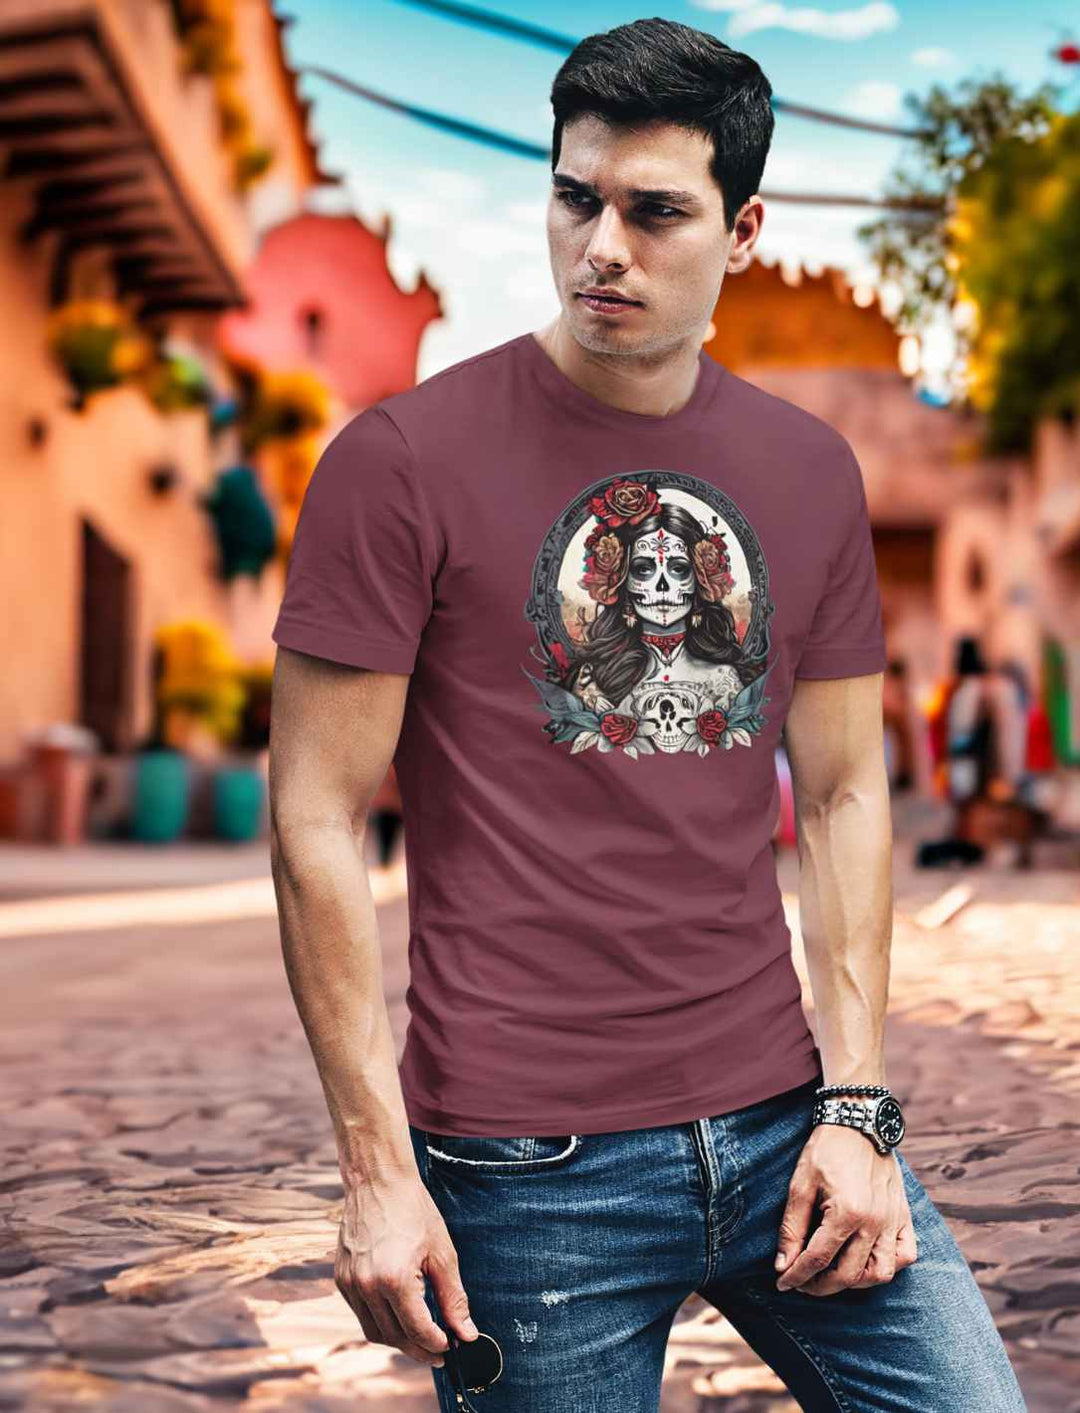 Junger Mann im Burgund Unisex La Catrina Shirt, stehend auf einer authentischen mexikanischen Straße am Dia de los Muertos – Runental.de.